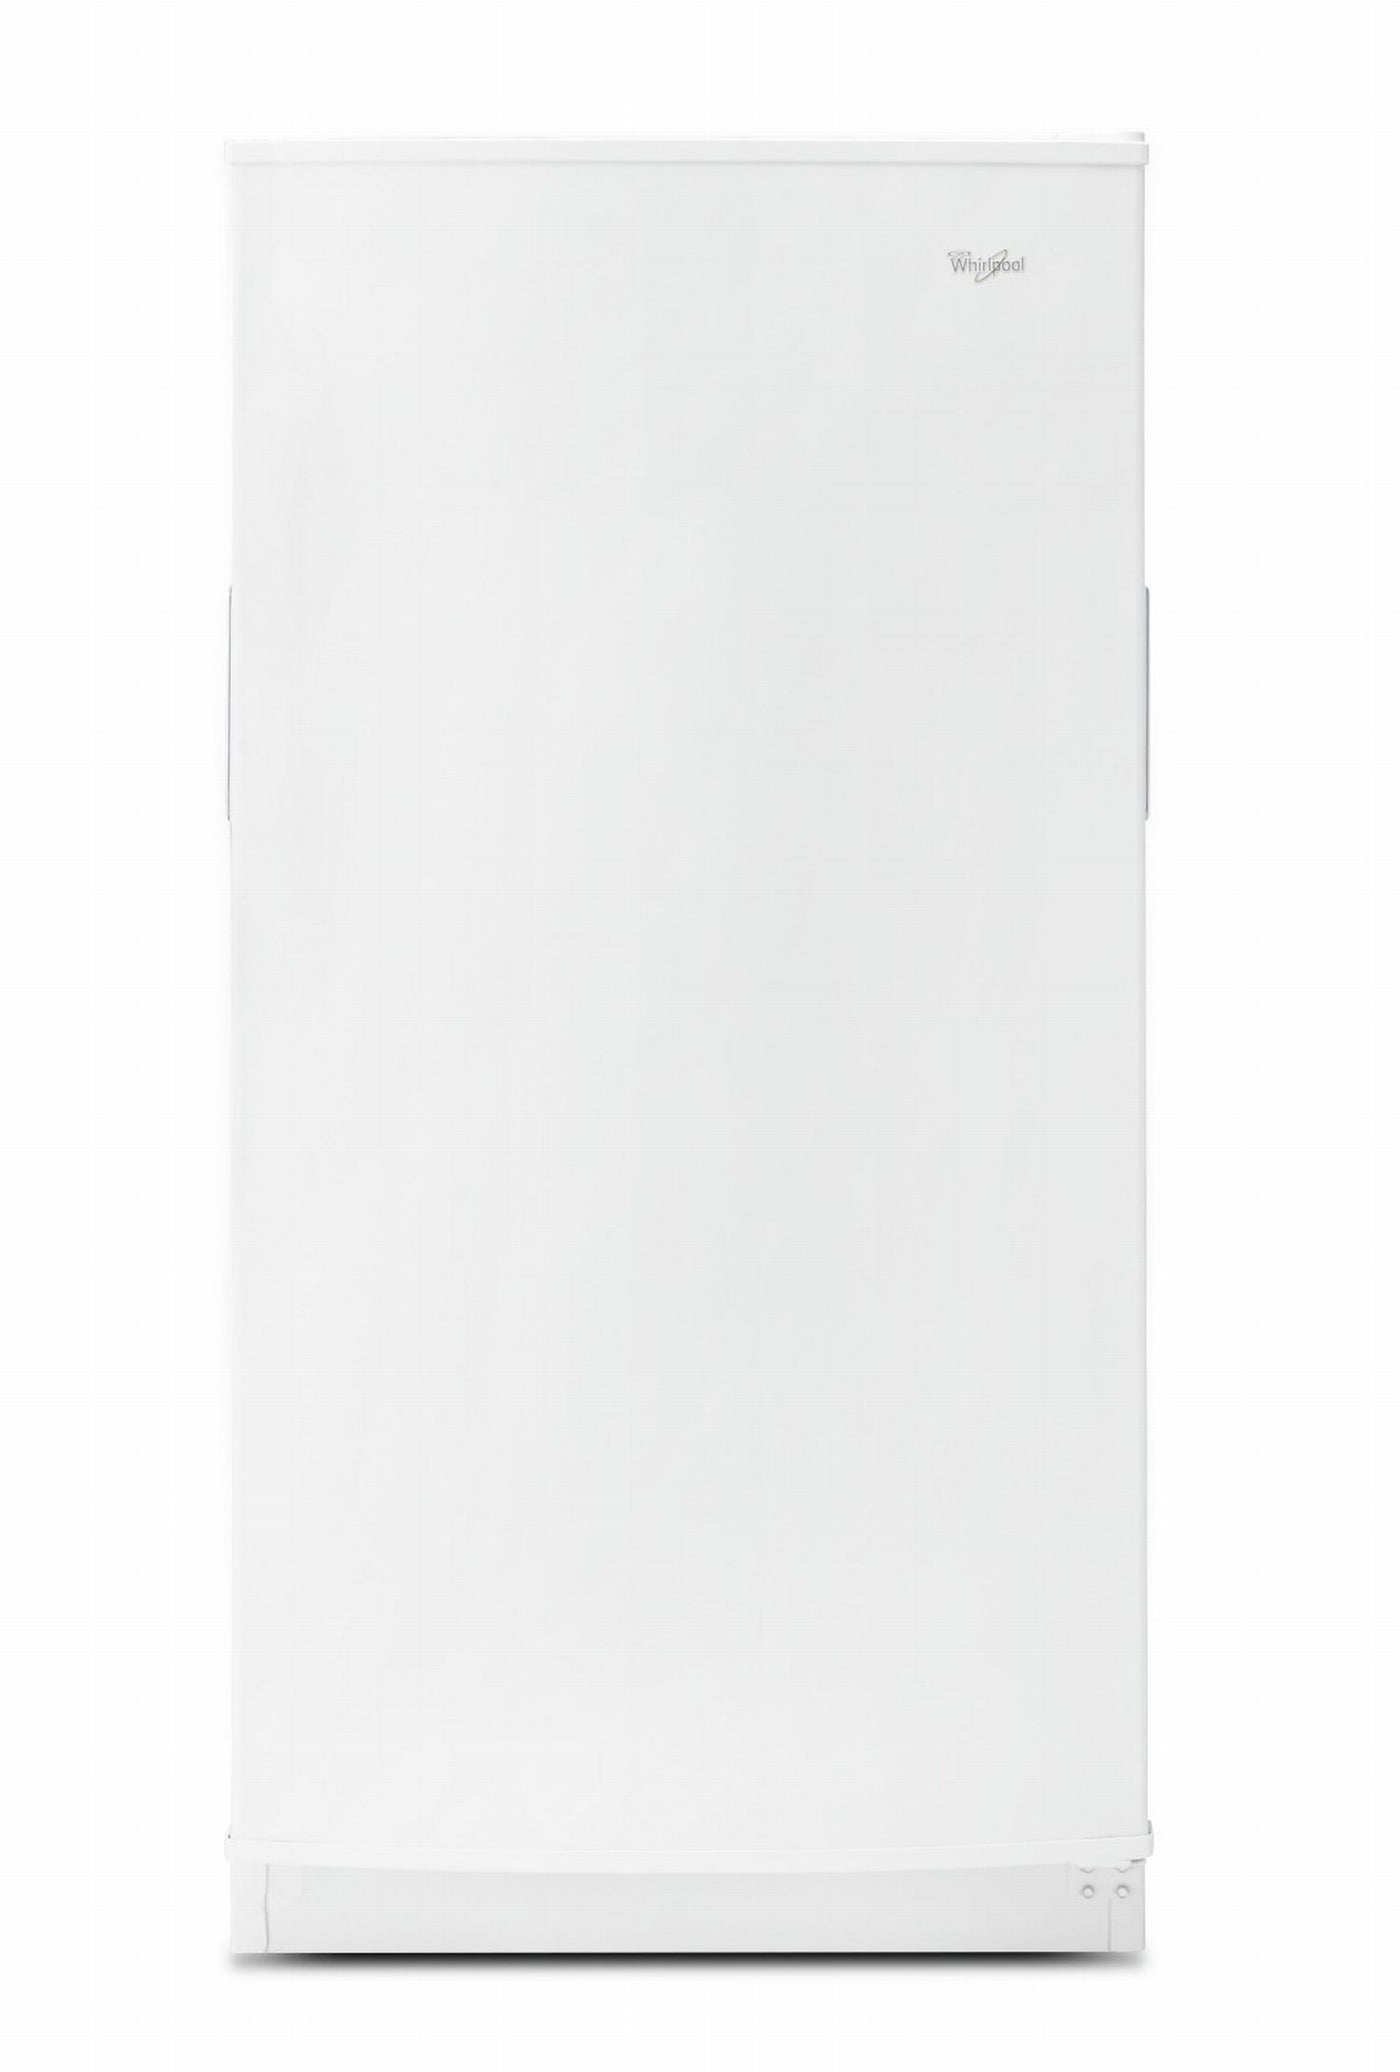 Whirlpool White Frost Free Upright freezer (16 Cu.Ft)- WZF34X16DW